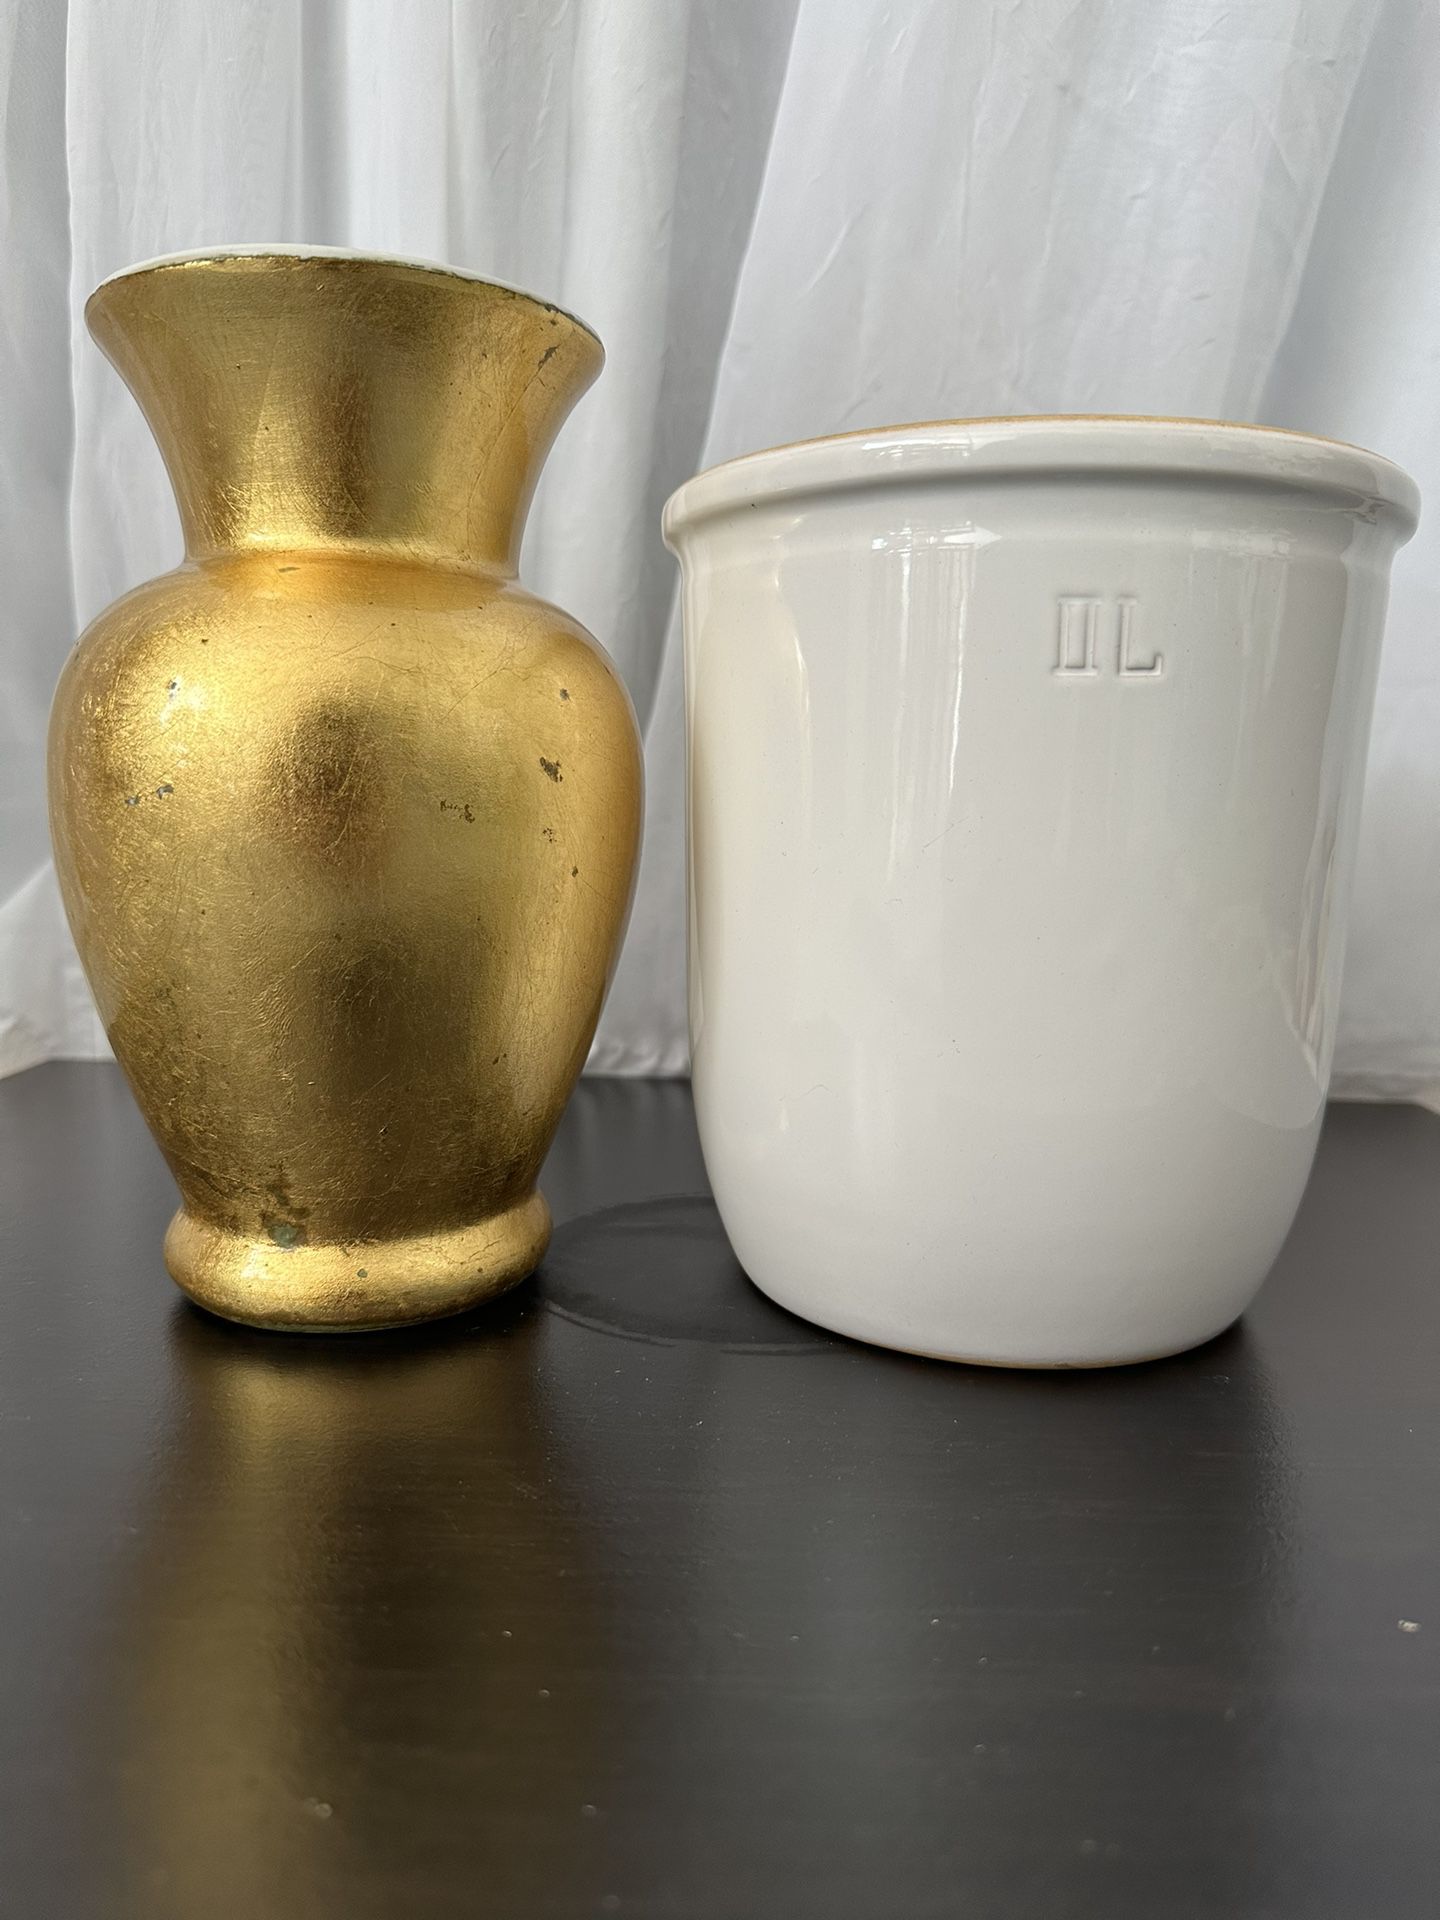 Gold Flower Vase & White Ceramic Pot (both)